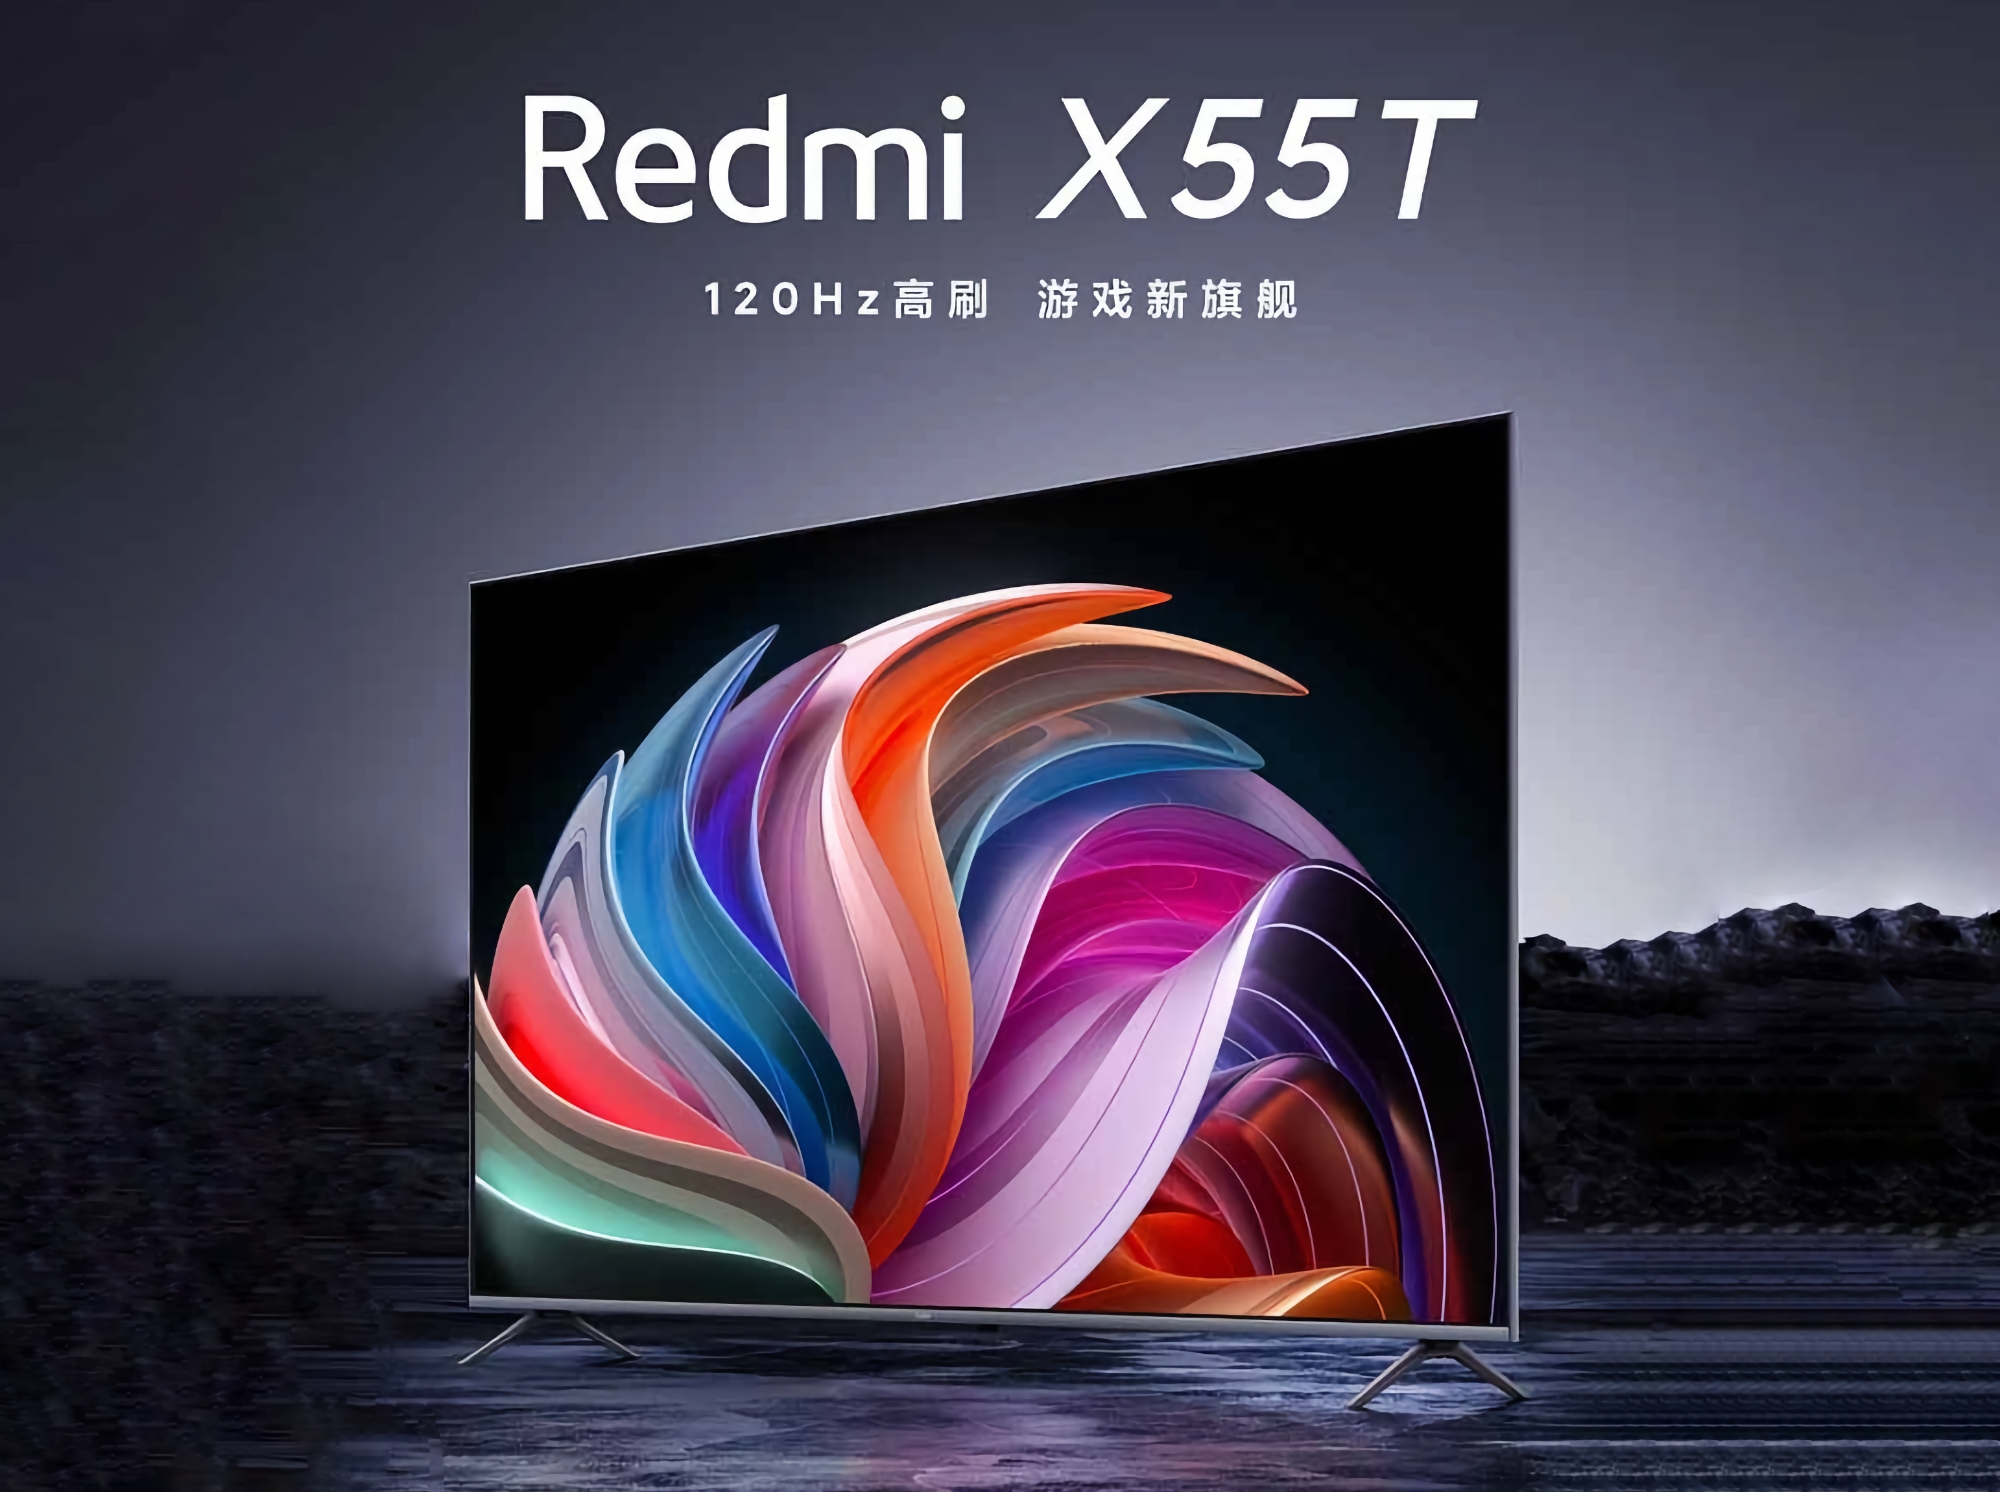 Redmi X55T: Smart TV z ekranem 4K 120Hz, HDMI 2.1 i obsługą AMD FreeSync Premium za 320 dolarów